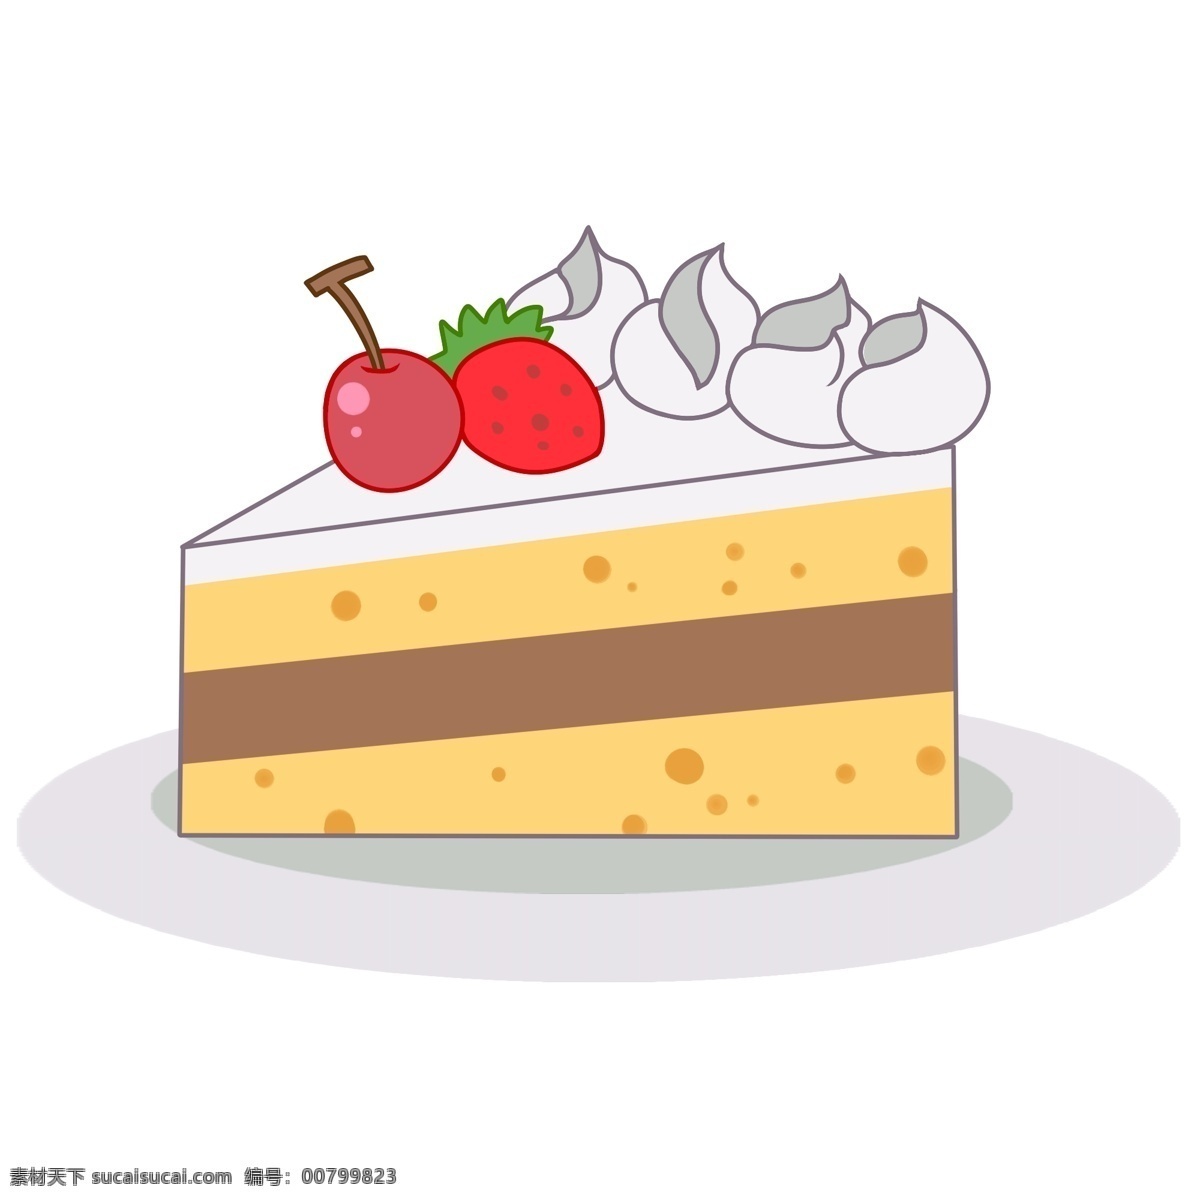 儿童节 食品 蛋糕 水果 樱桃 草莓